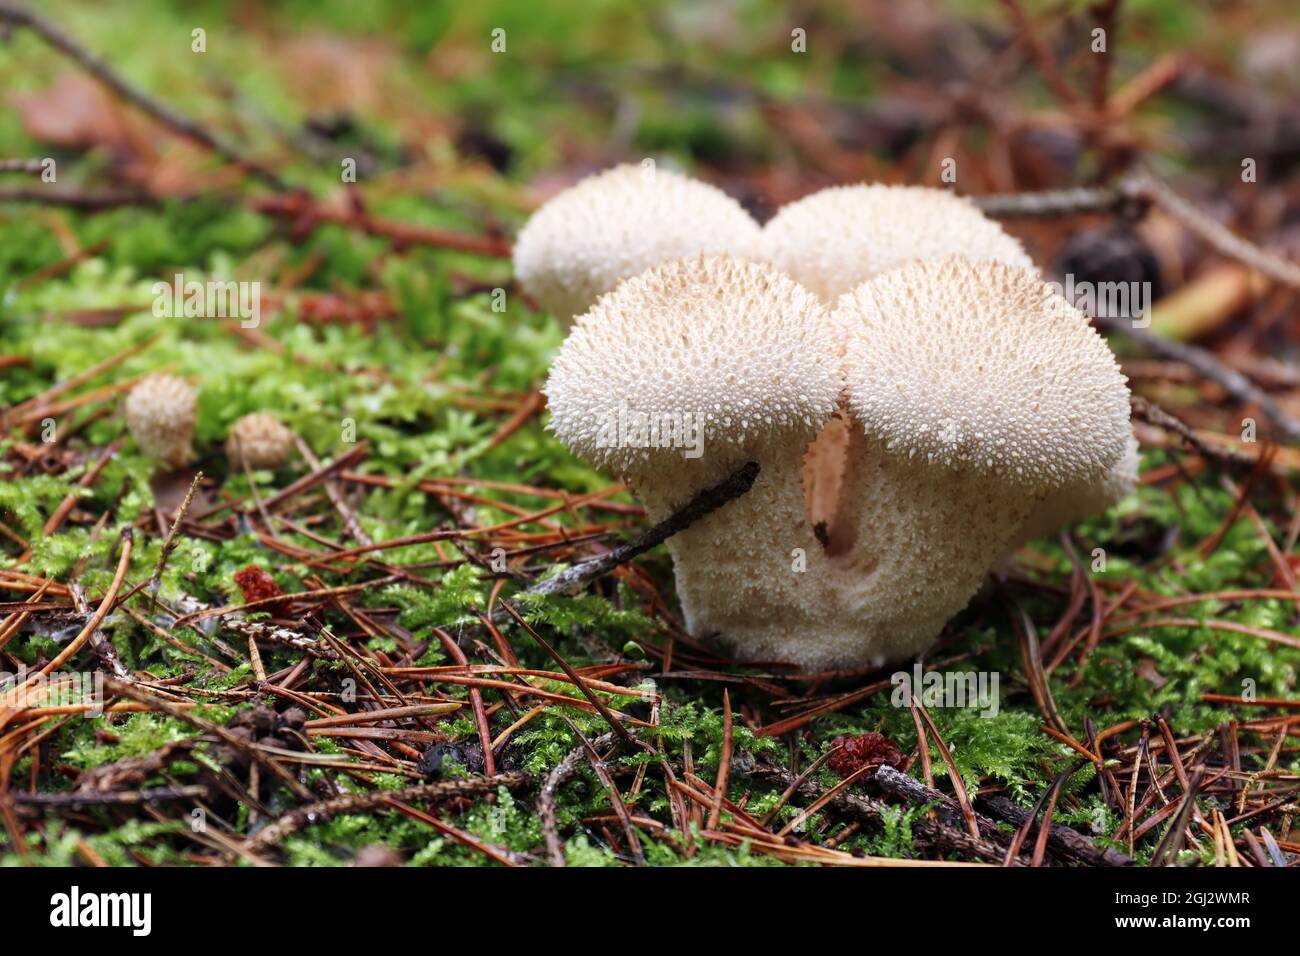 Particolare del paffball comune - fungo commestibile Foto Stock